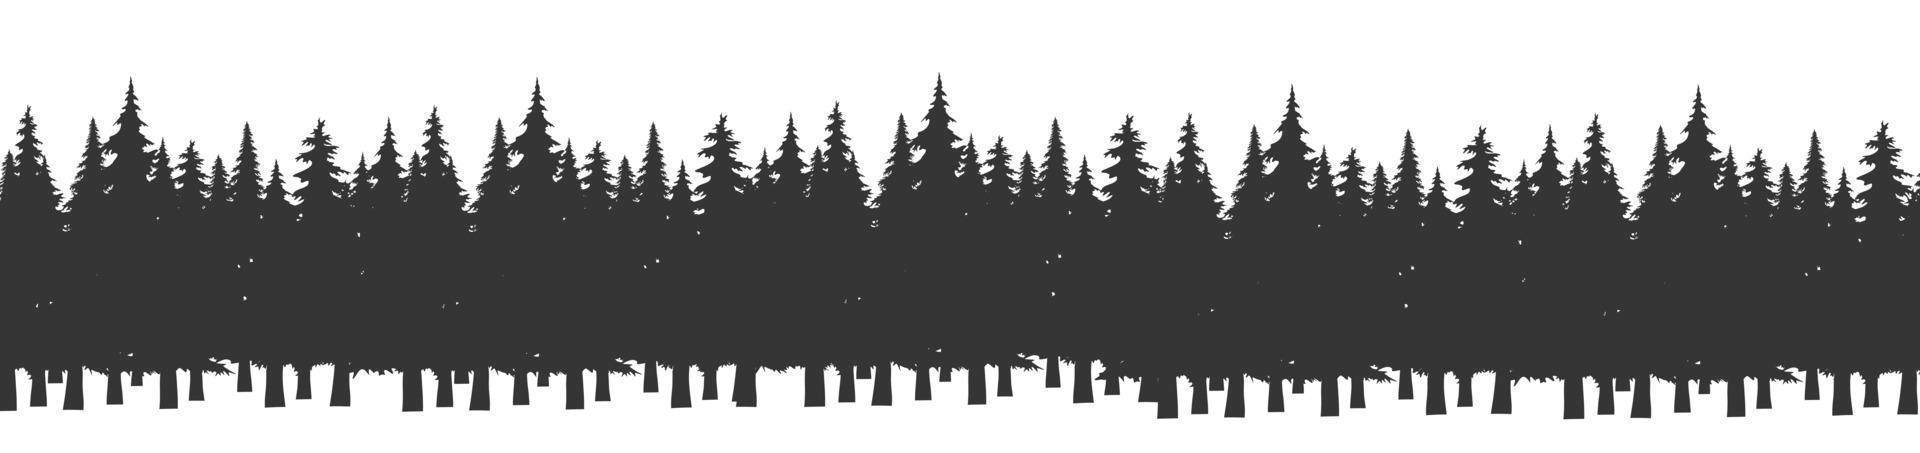 forêt de silhouette de sapins de noël. panorama d'épinettes de conifères. parc de bois à feuilles persistantes. vecteur sur fond blanc